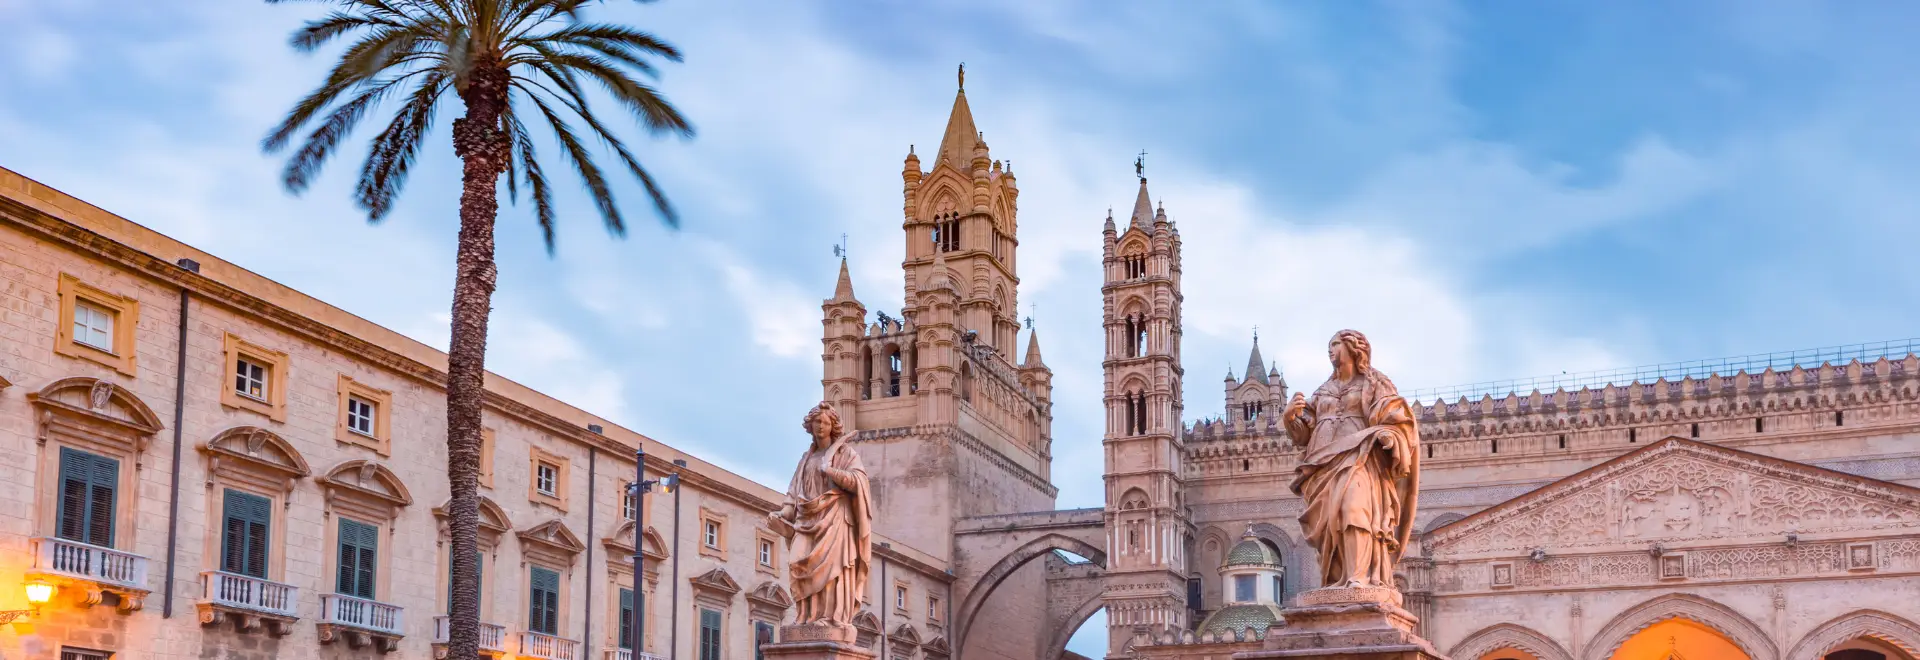 Sicilia - La Festa di Santa Rosalia in Palermo